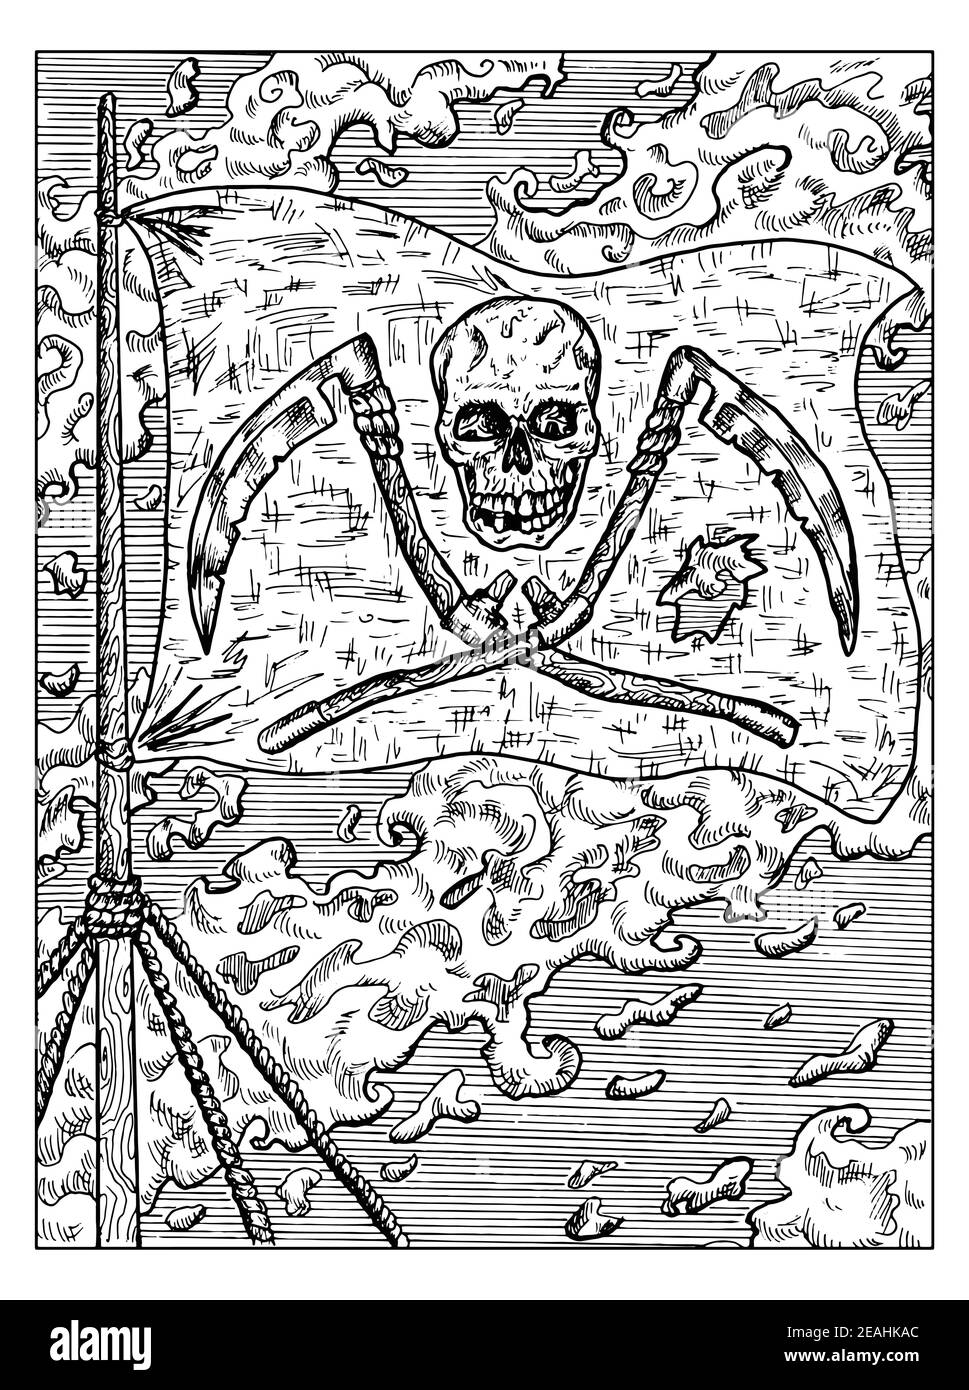 Illustration marine noire et blanche avec le drapeau de pirate Jolly Rodger avec crâne et scythe accroché au mât du navire. Dessins nautiques vectoriels, aventure Illustration de Vecteur